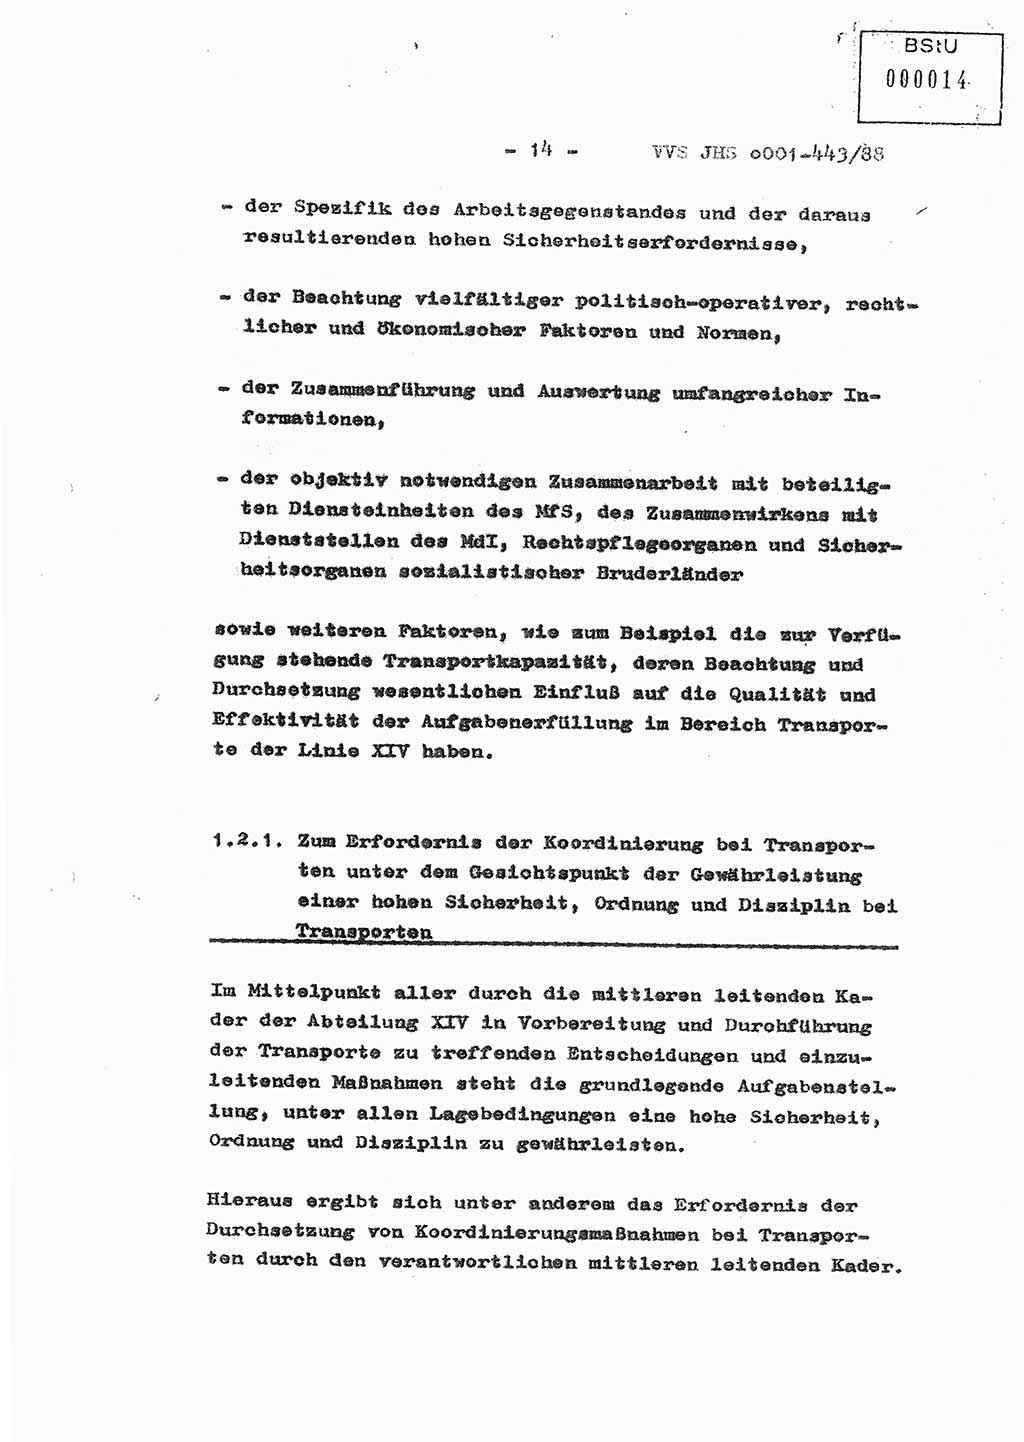 Diplomarbeit Hauptmann Michael Rast (Abt. ⅩⅣ), Major Bernd Rahaus (Abt. ⅩⅣ), Ministerium für Staatssicherheit (MfS) [Deutsche Demokratische Republik (DDR)], Juristische Hochschule (JHS), Vertrauliche Verschlußsache (VVS) o001-443/88, Potsdam 1988, Seite 14 (Dipl.-Arb. MfS DDR JHS VVS o001-443/88 1988, S. 14)